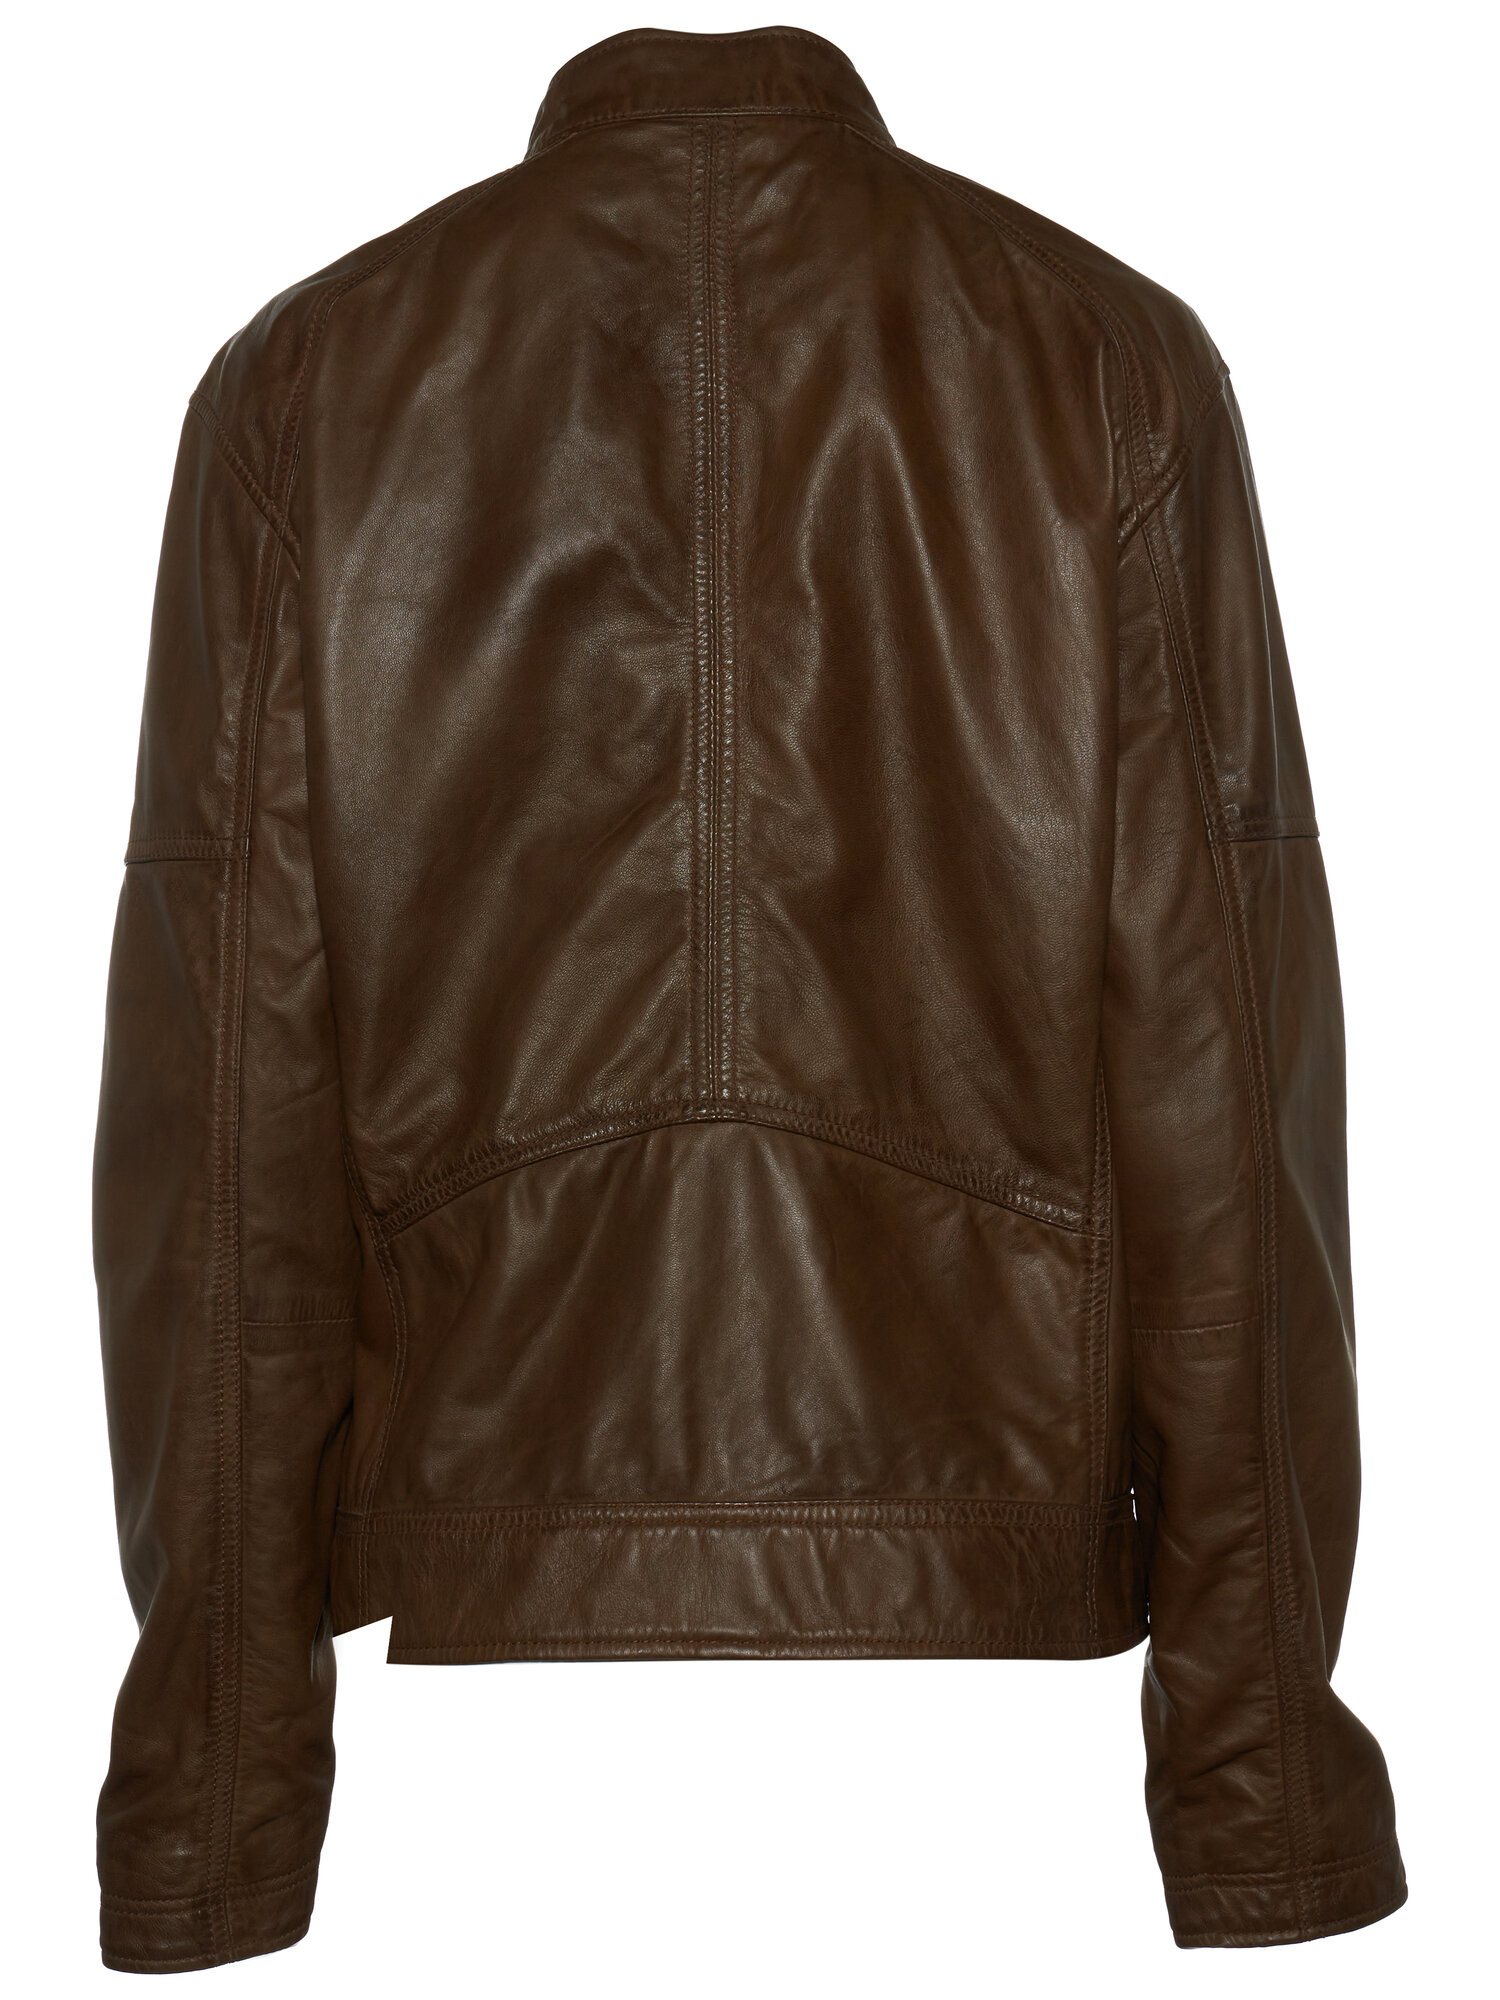 Кожаная куртка Strellson Bexley-S демисезонная, без капюшона, внутренний карман, подкладка, карманы, размер 48, бежевый - фотография № 2